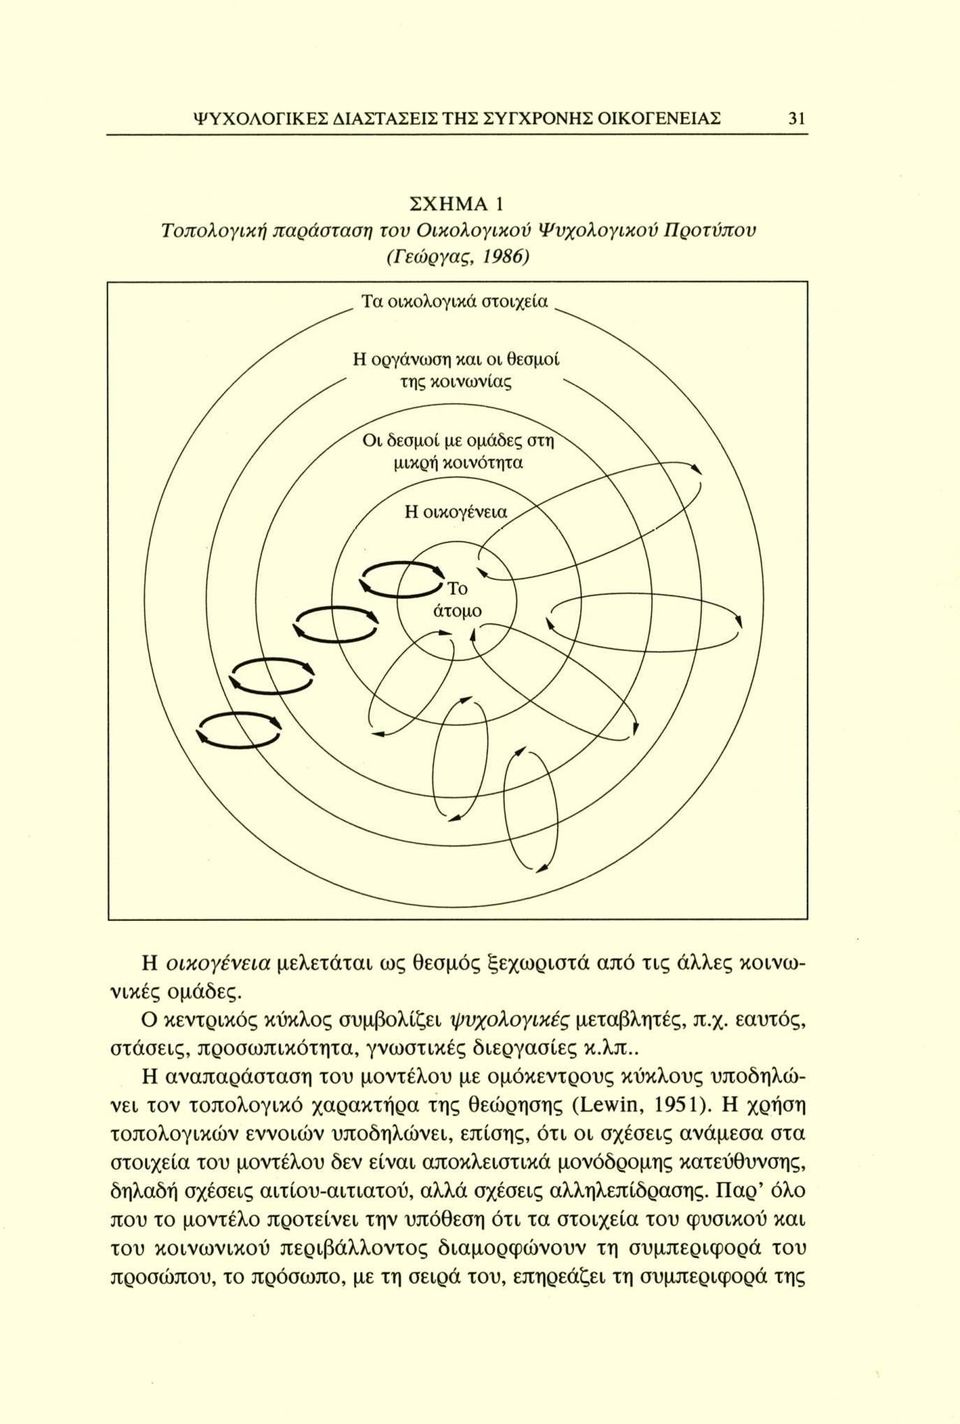 . Η αναπαράσταση του μοντέλου με ομόκεντρους κύκλους υποδηλώνει τον τοπολογικό χαρακτήρα της θεώρησης (Lewin, 1951).